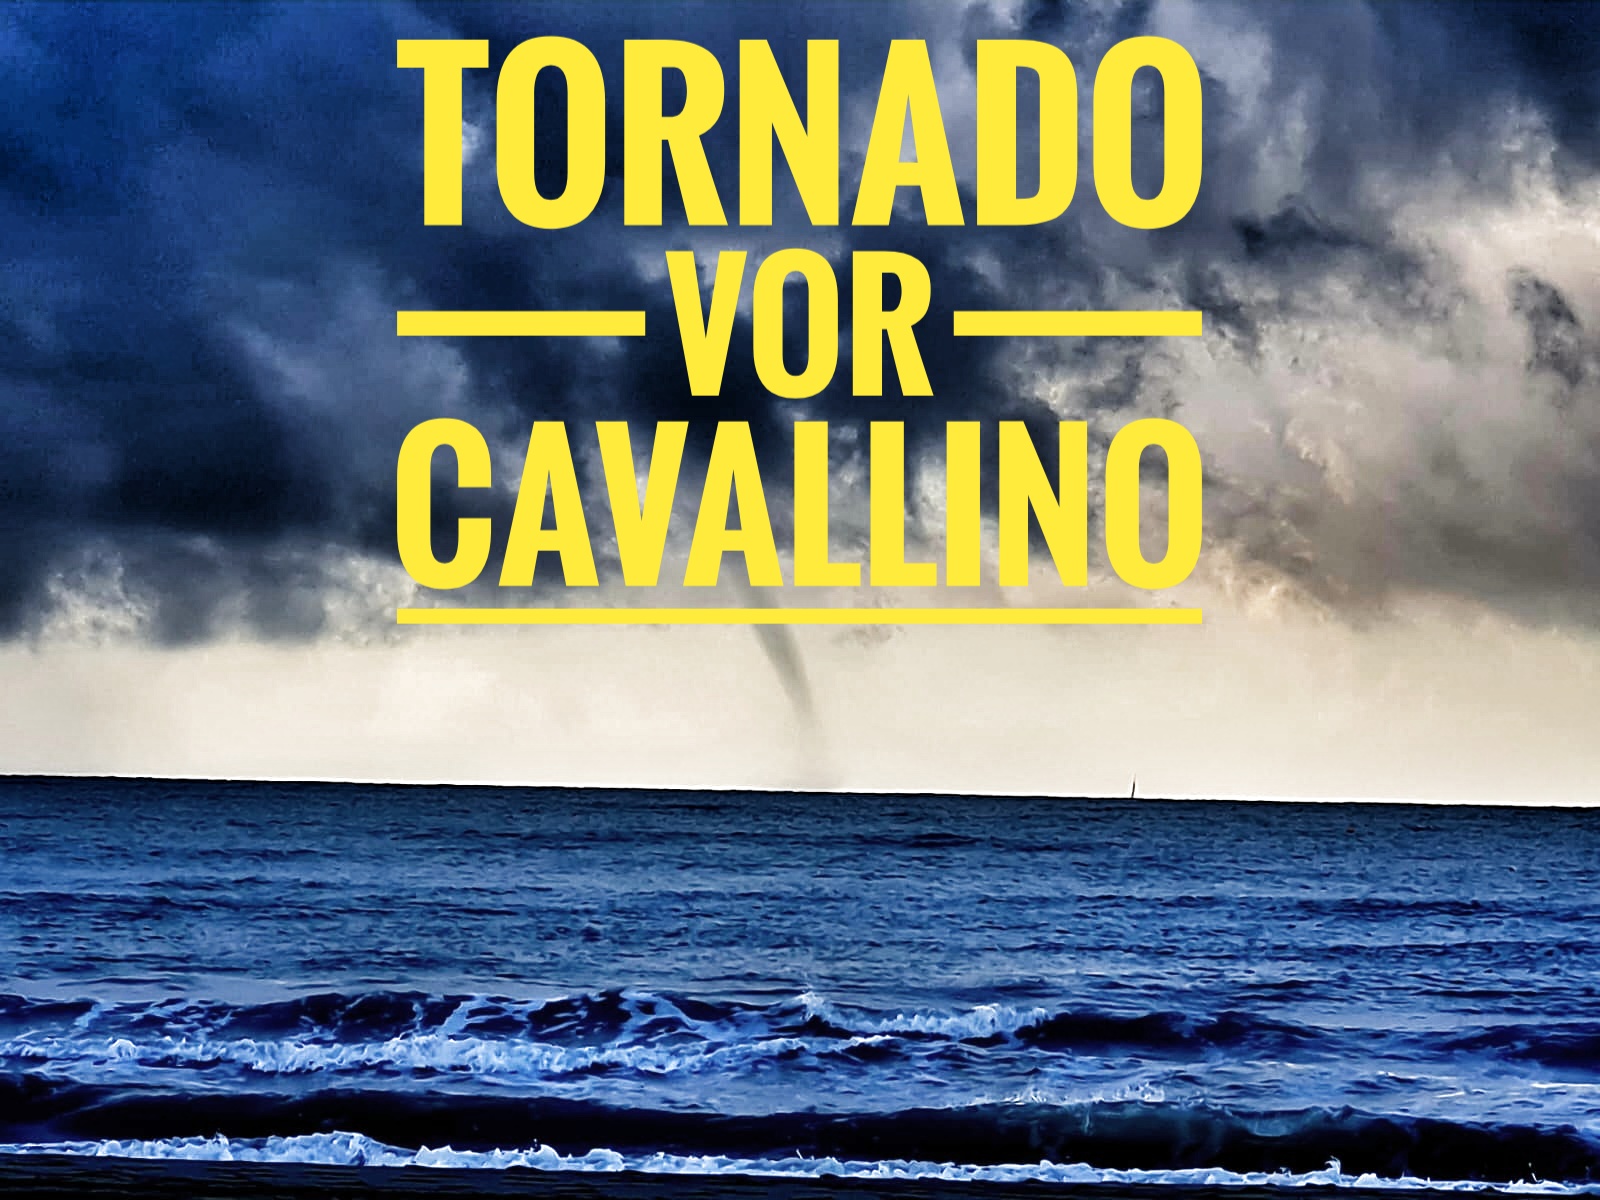 Tornado vor Cavallino